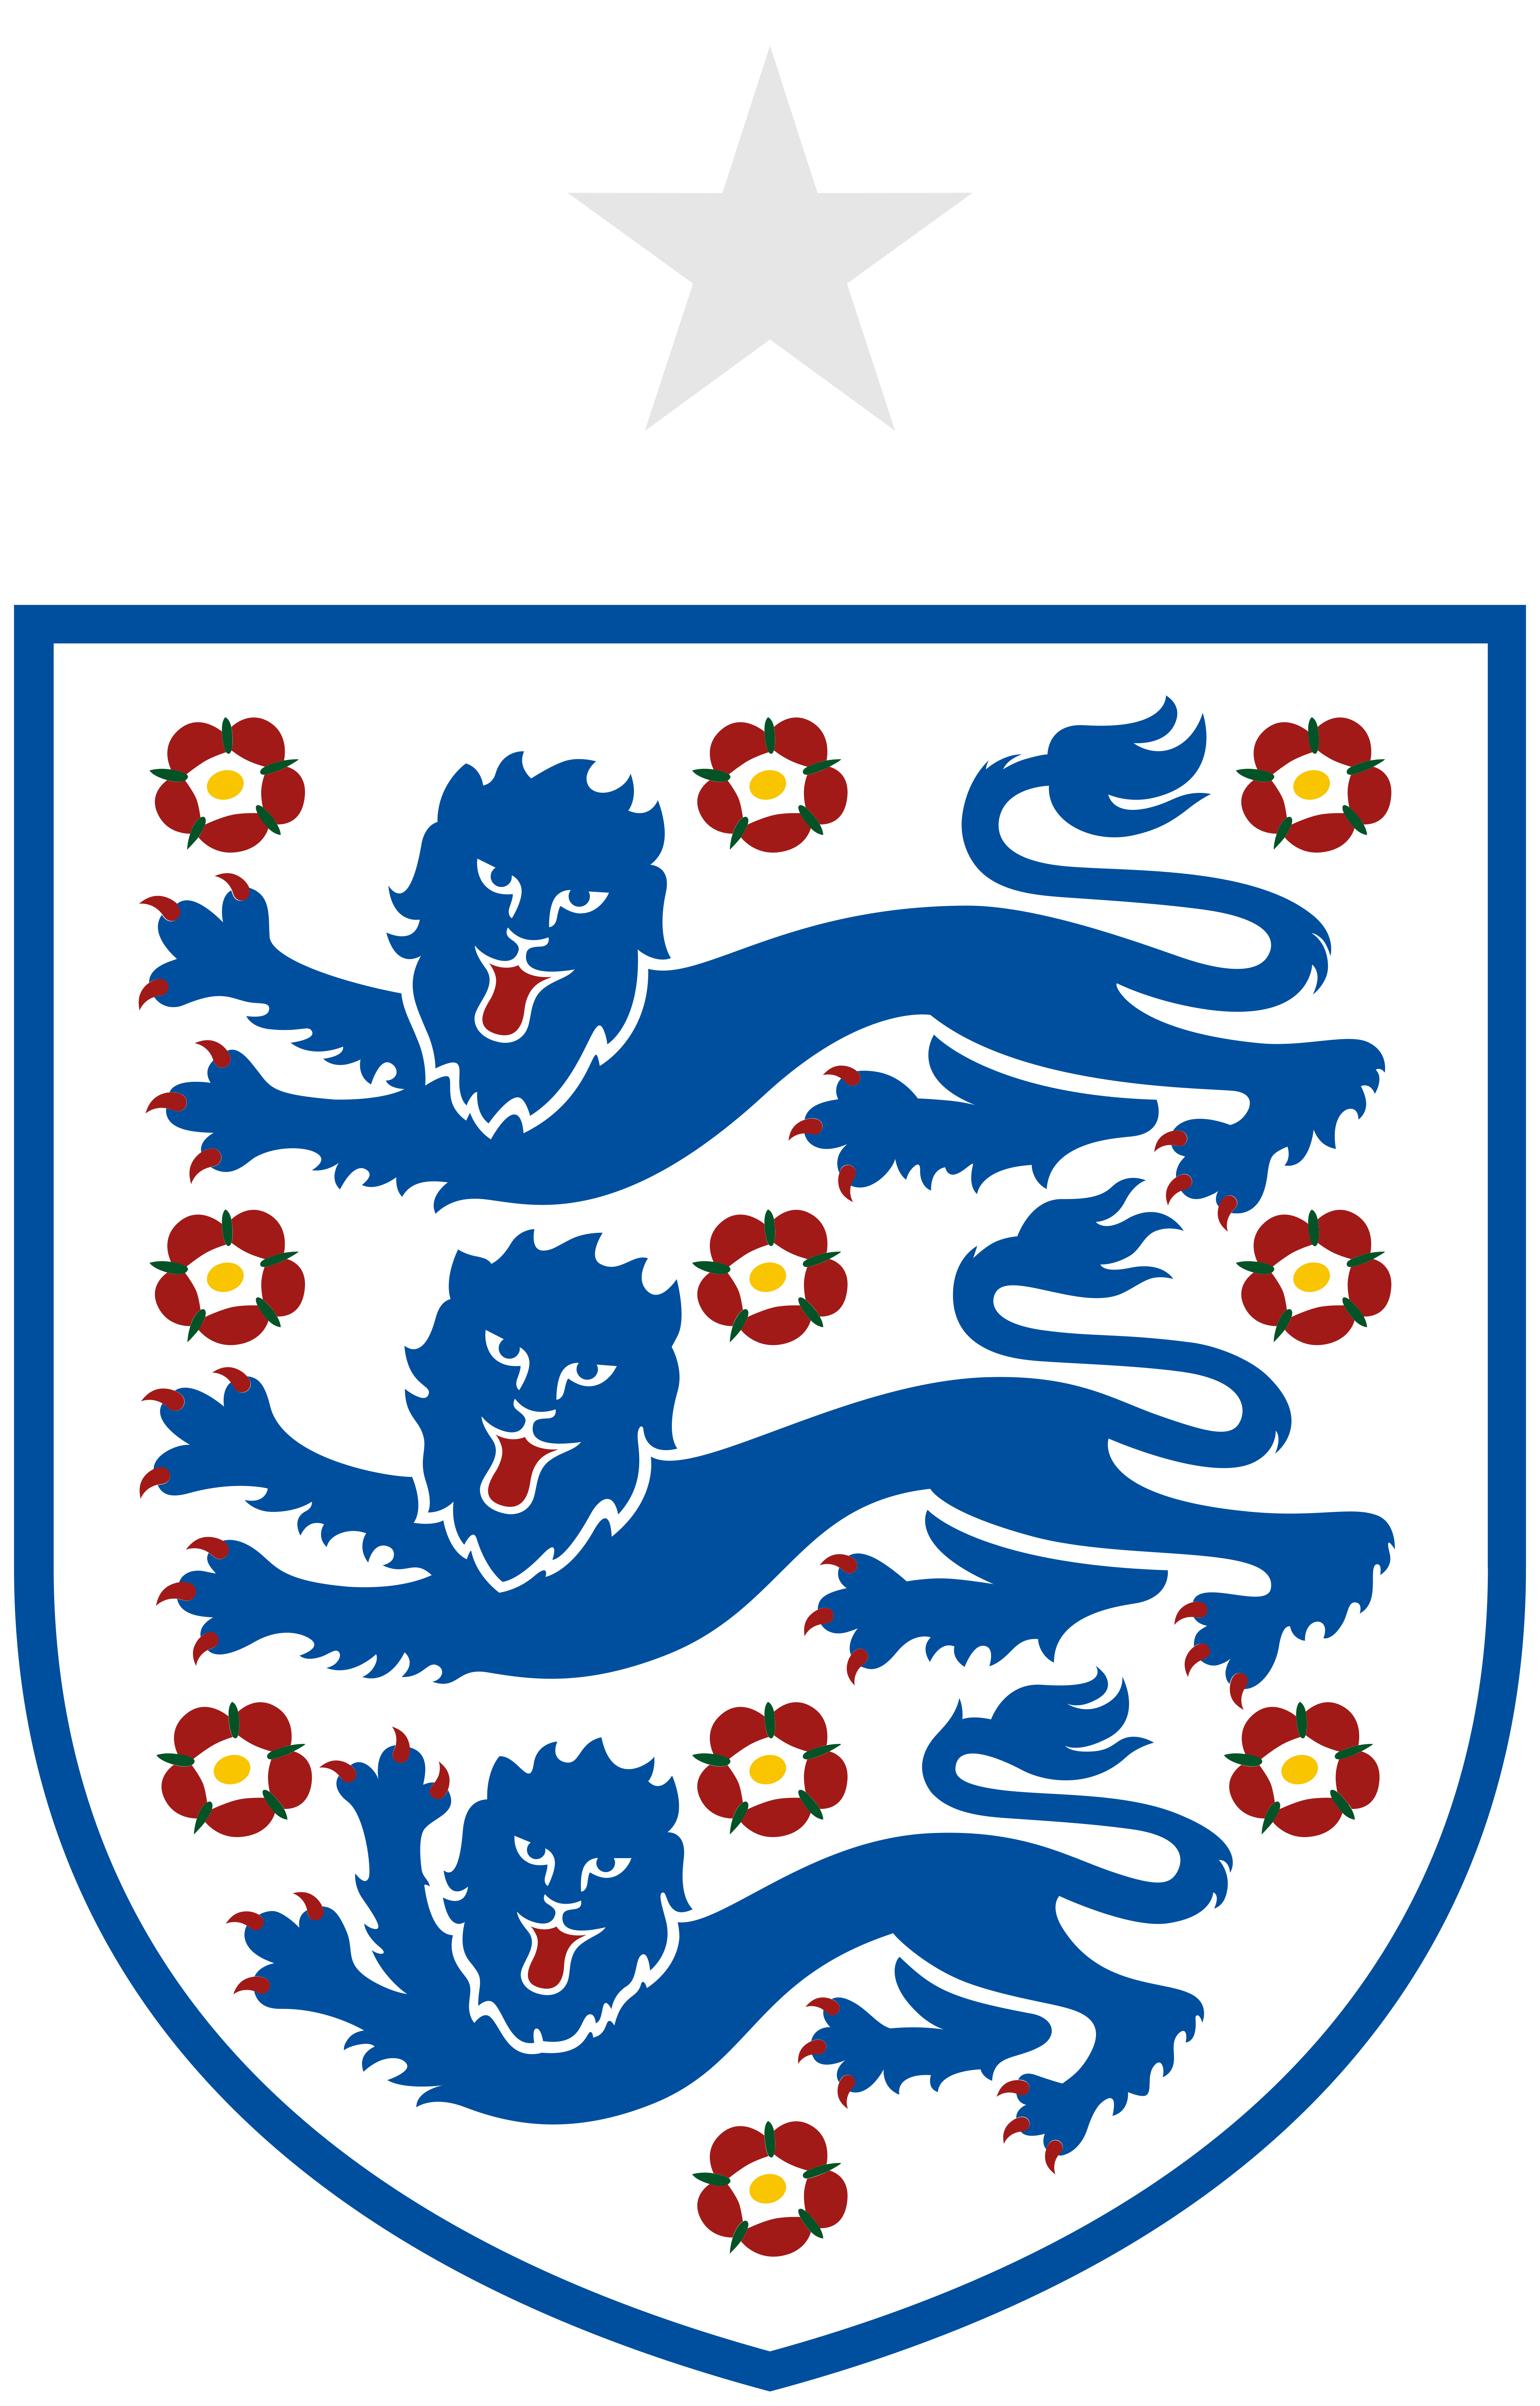 england national team logo - England National Football Team Logo